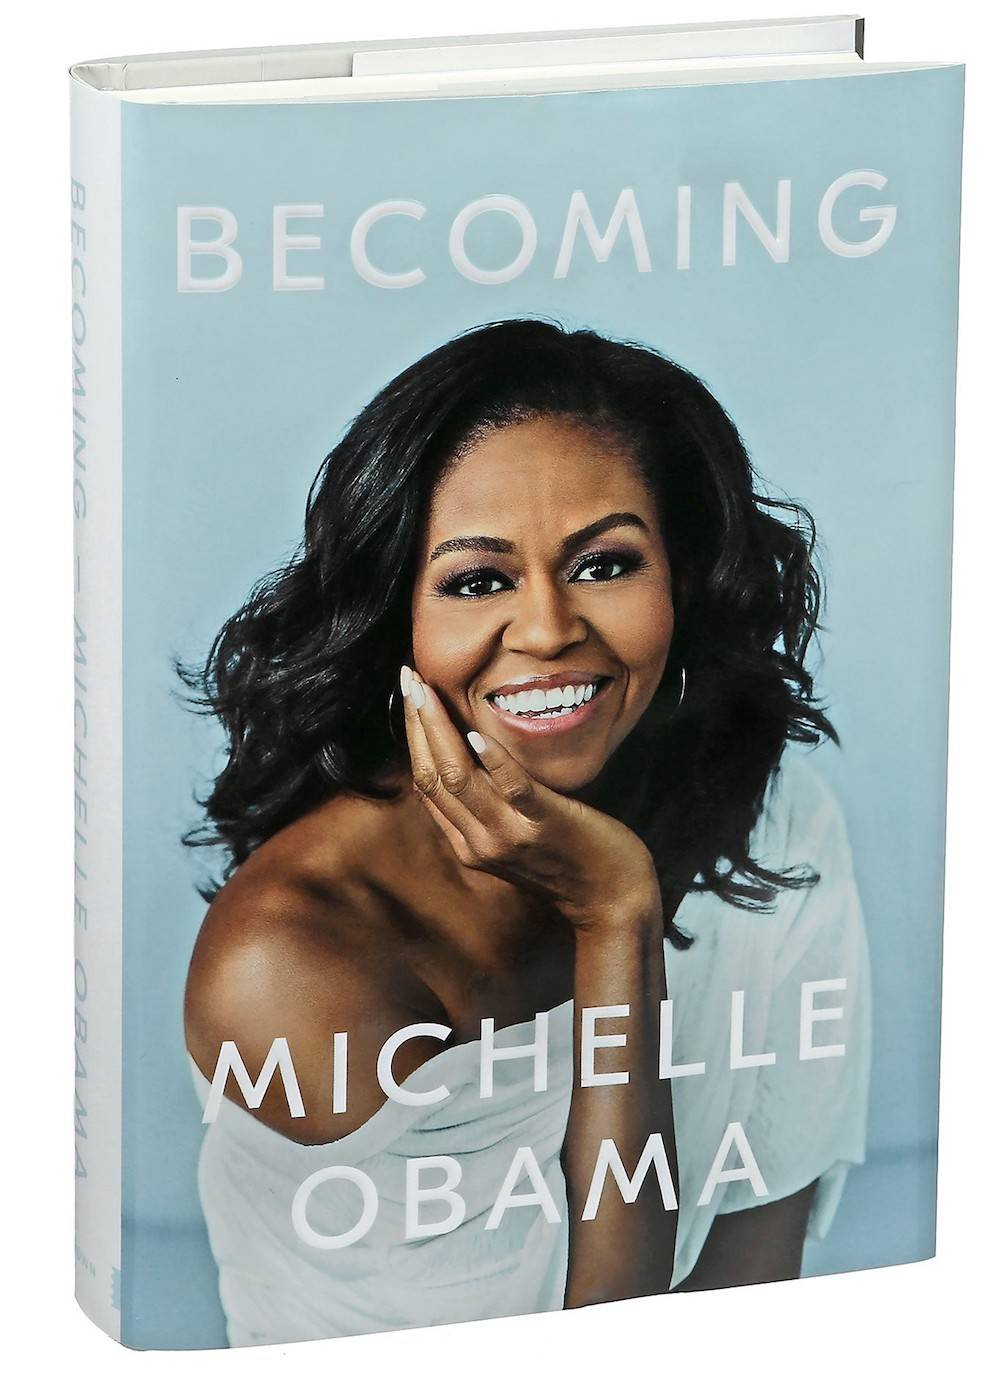 Okładka książki Michelle Obamy (Fot. materiały promocyjne)